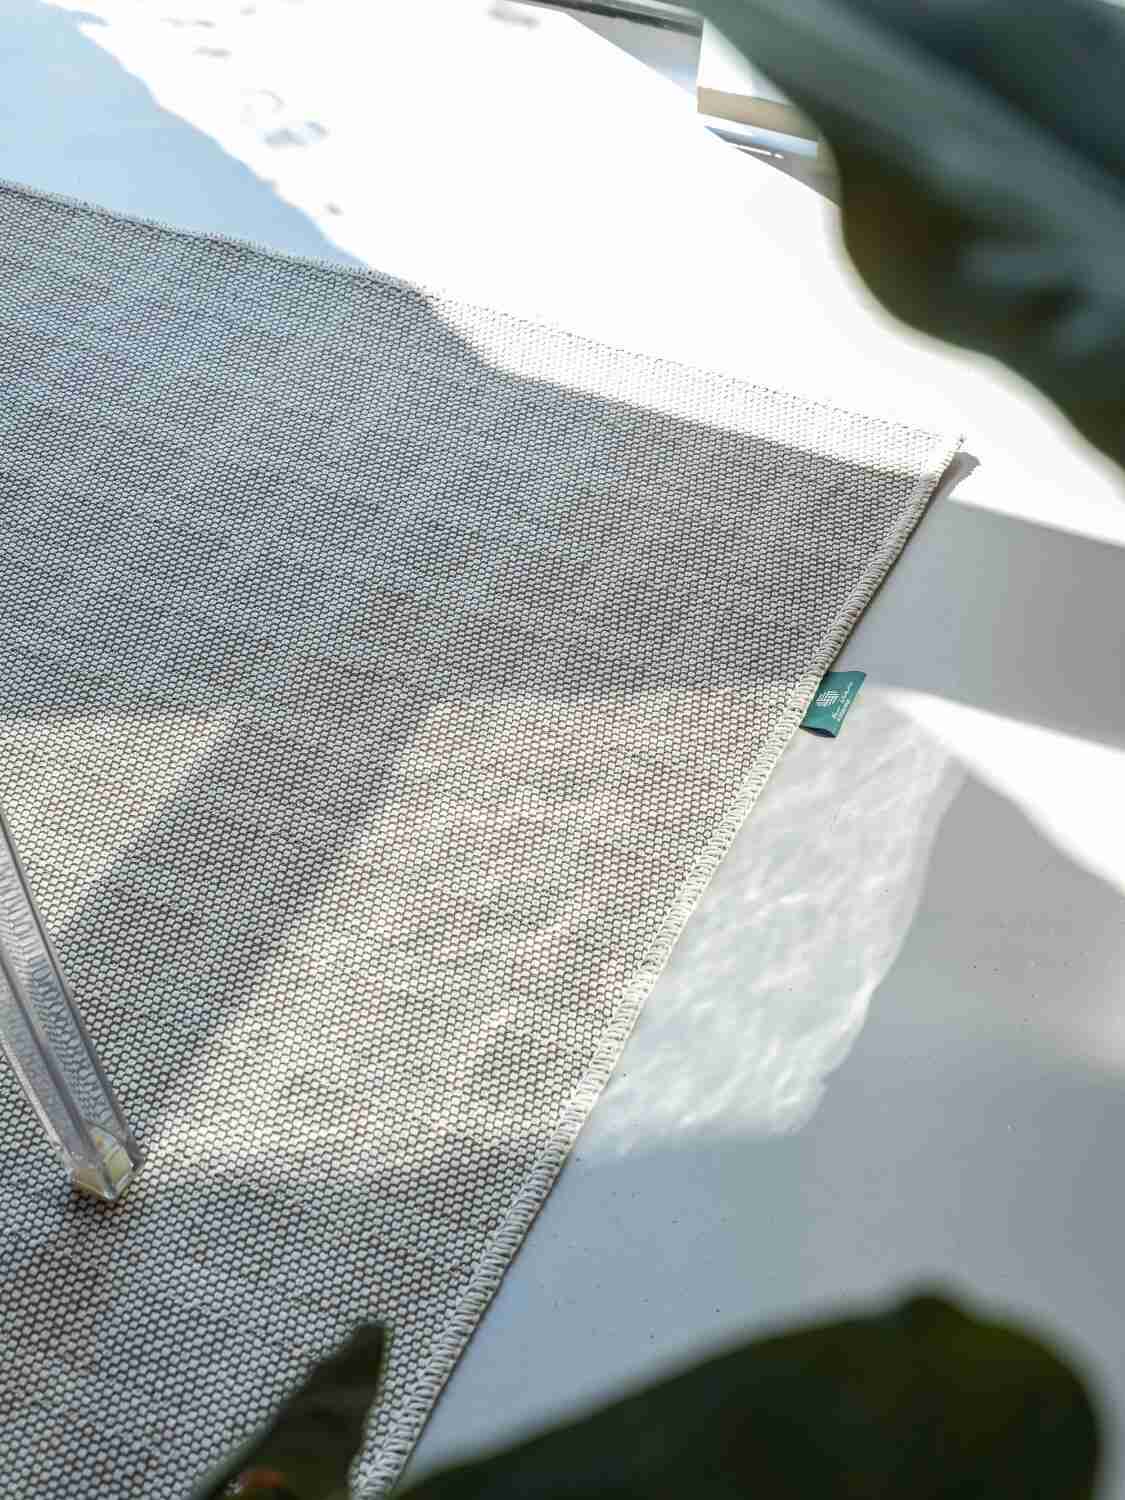 Rivoluzioni circolari: la collaborazione di successo tra Aquafil e New Weave nella creazione della pionieristica collezione di tappeti “R2R”